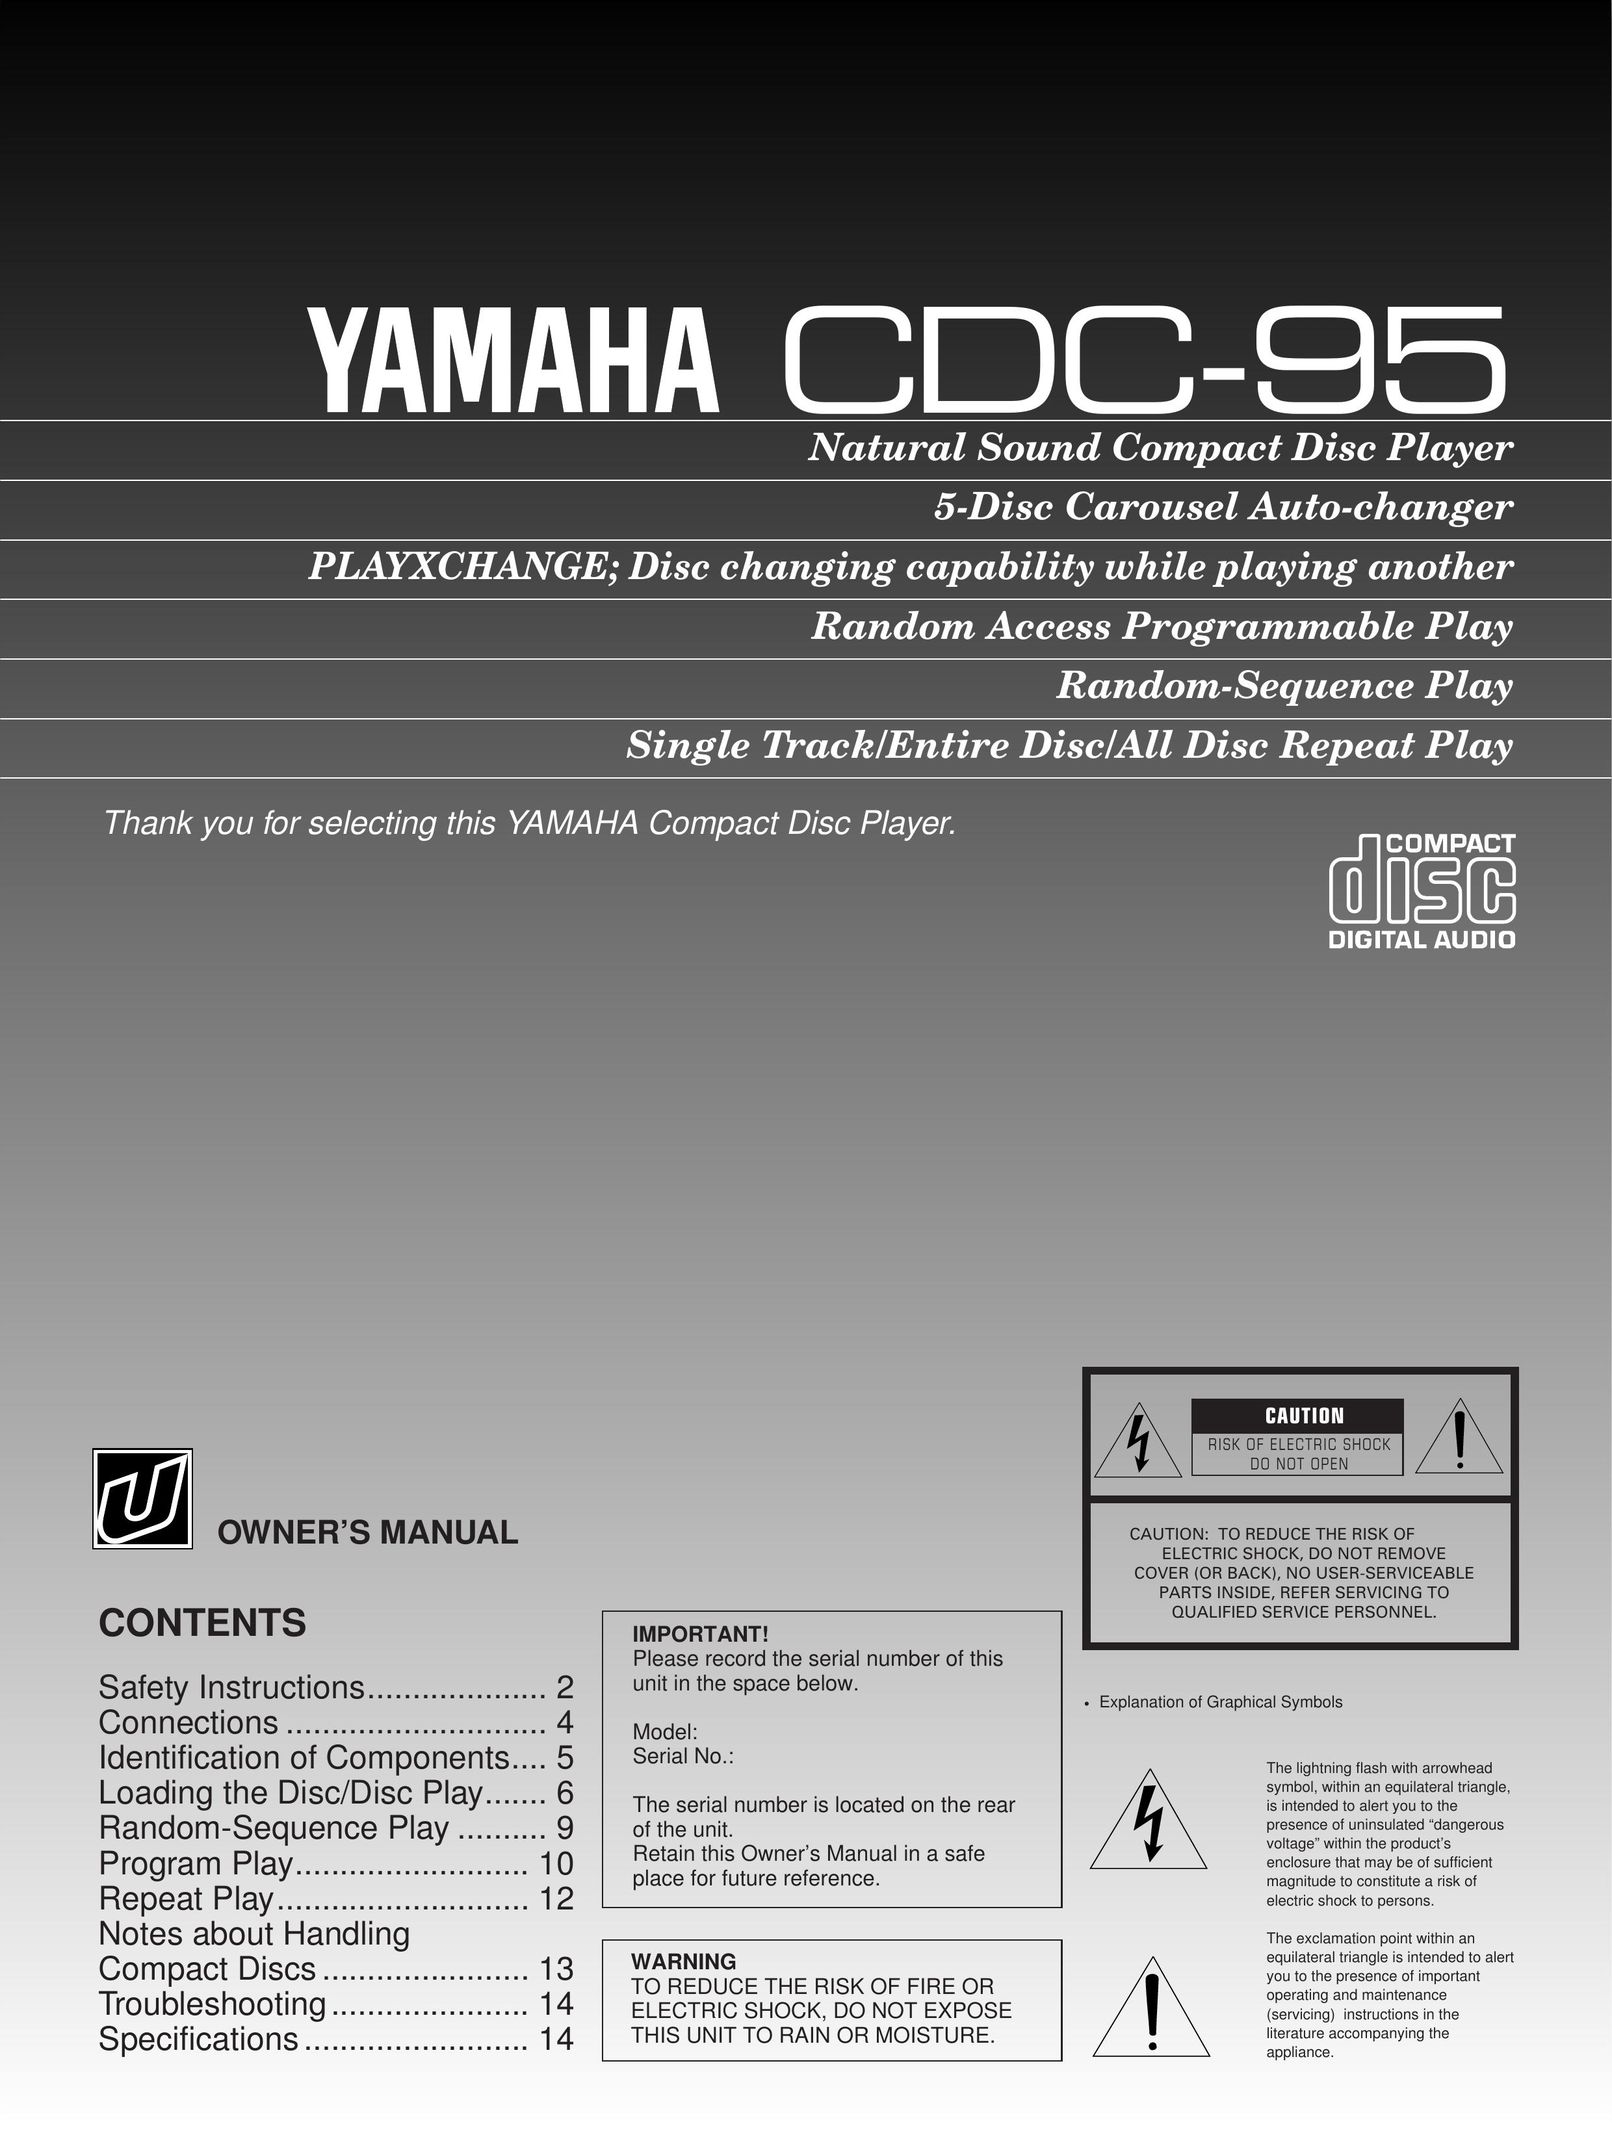 Yamaha CDC-95 CD Player User Manual